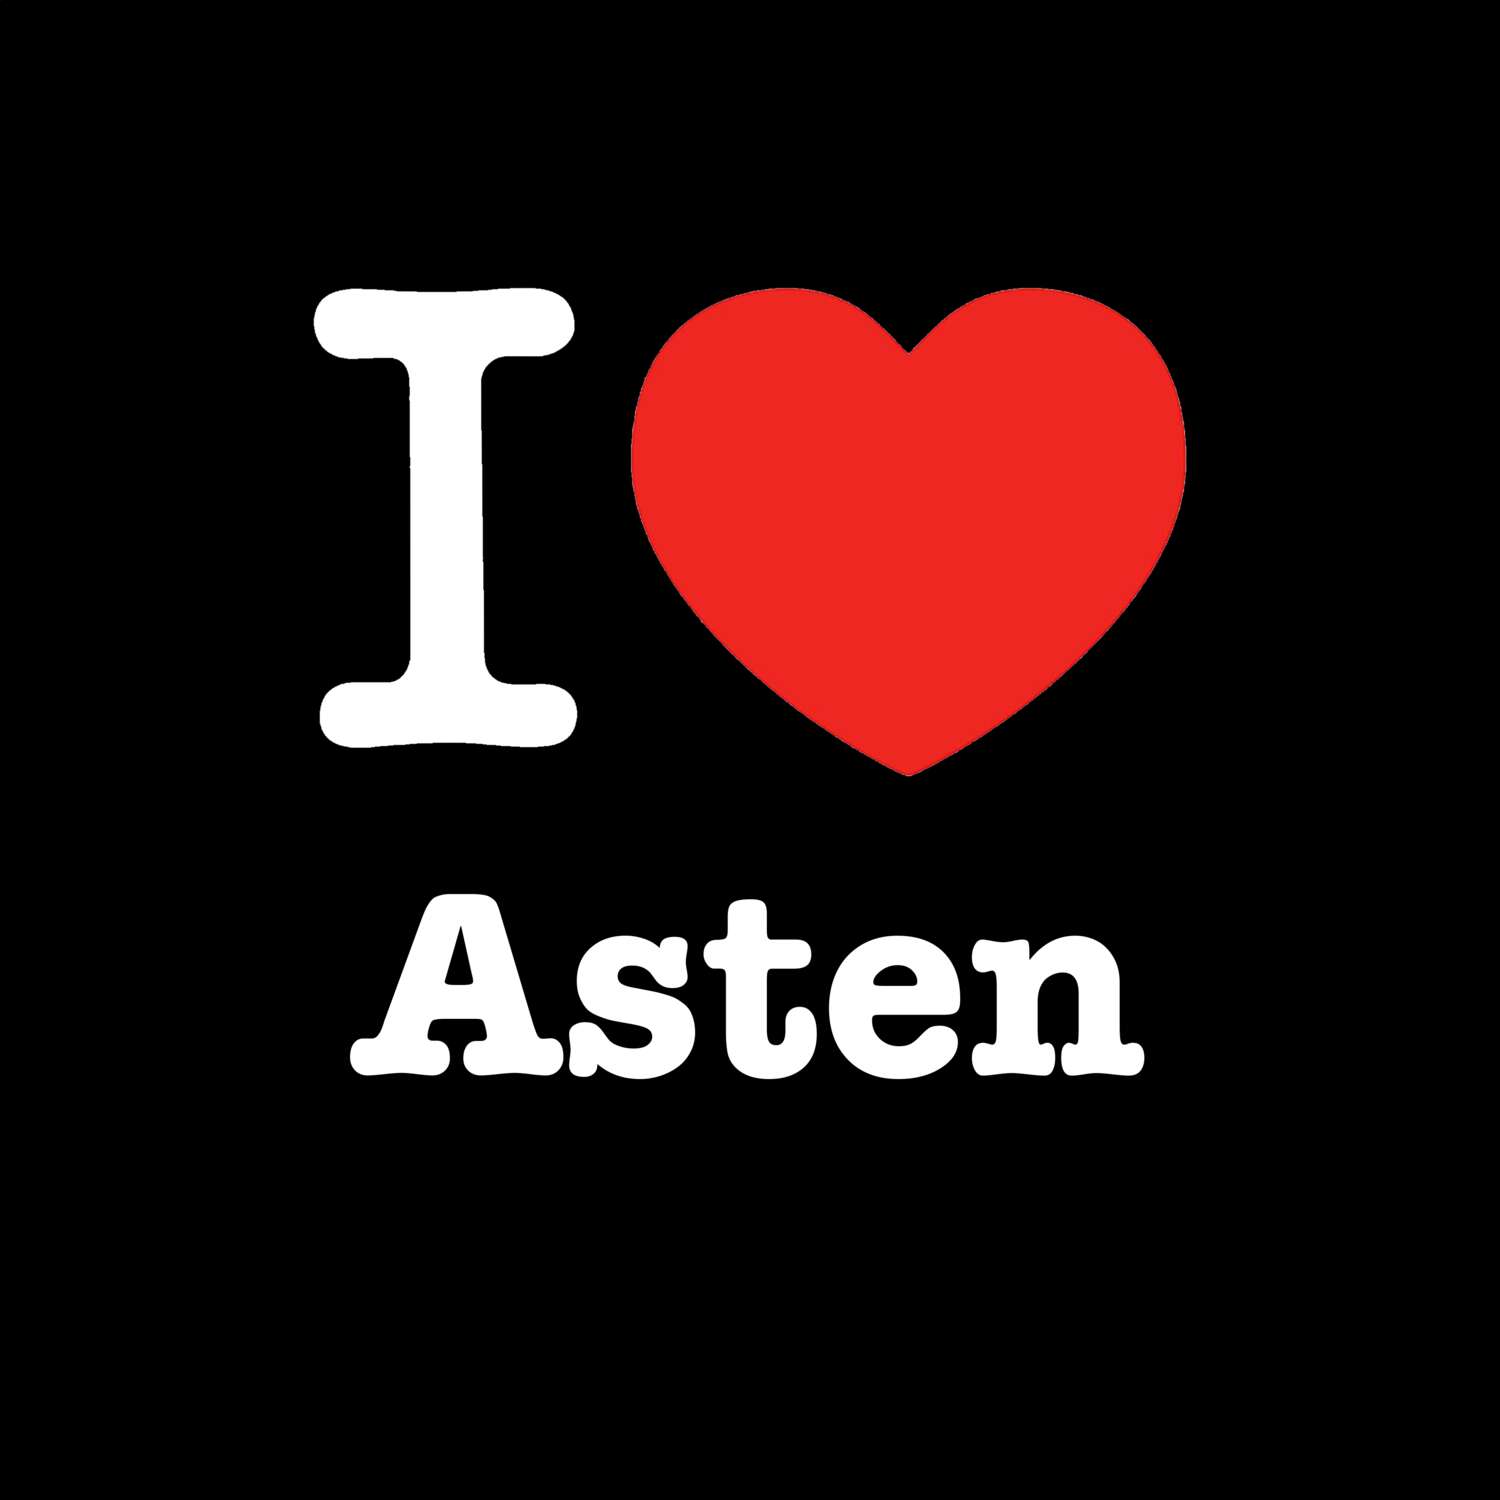 Asten T-Shirt »I love«